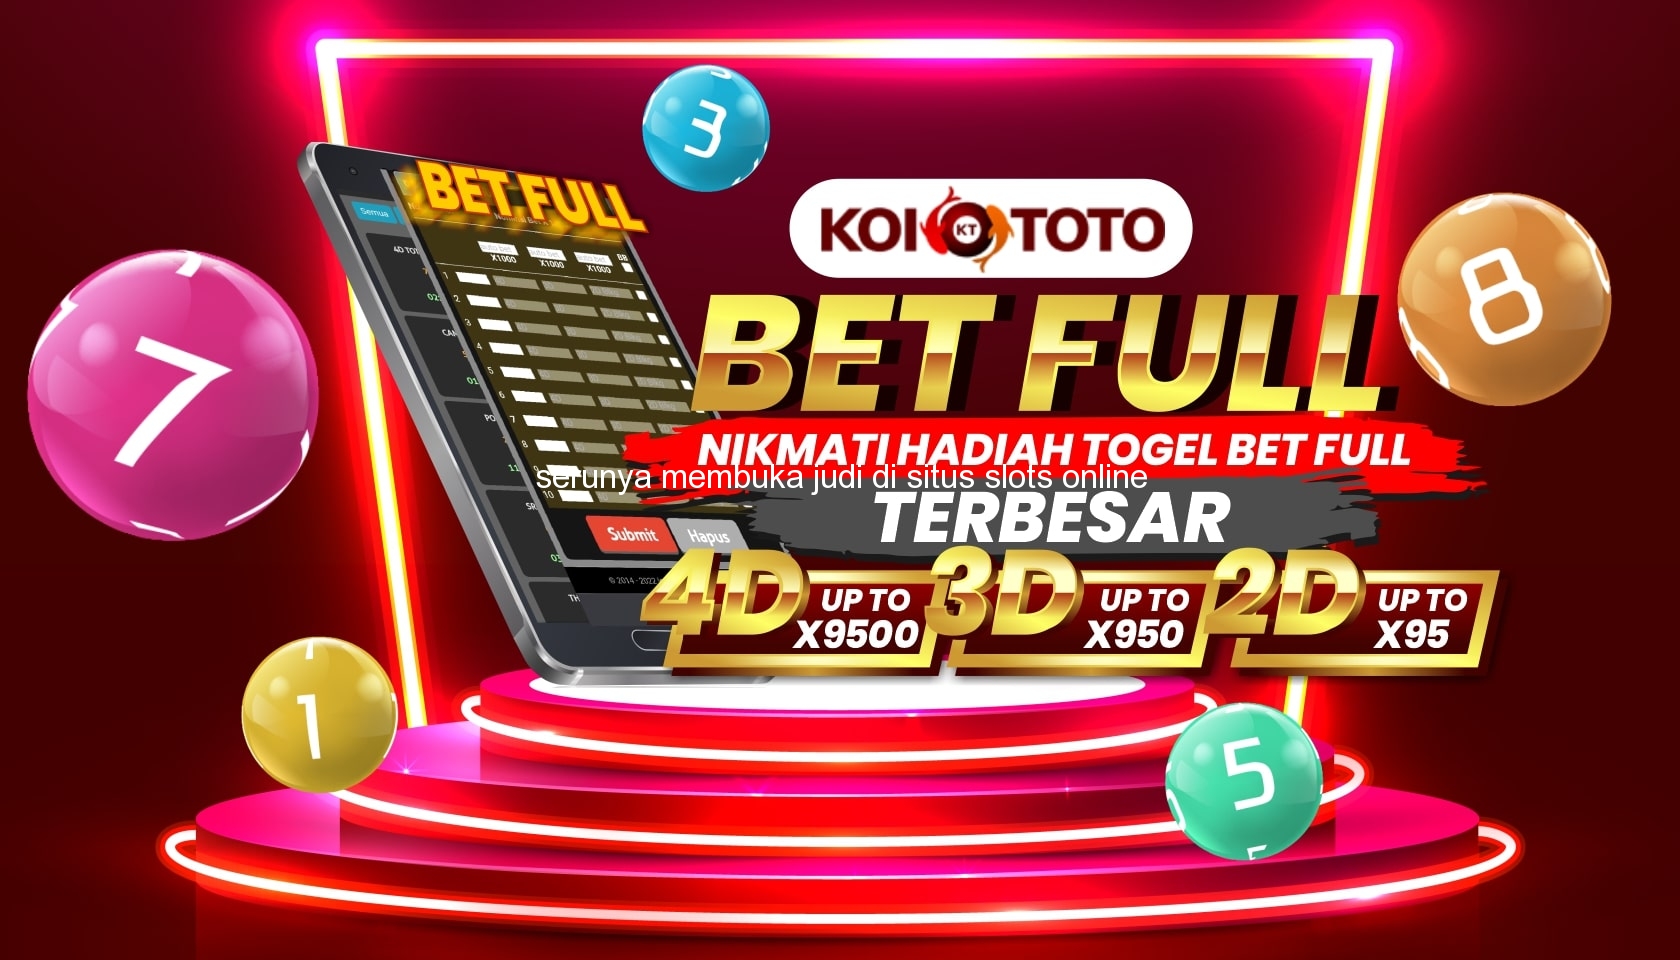 Serunya Membuka Judi di Situs Slots Online Terbaik di Banjar Baru – KOITOTO